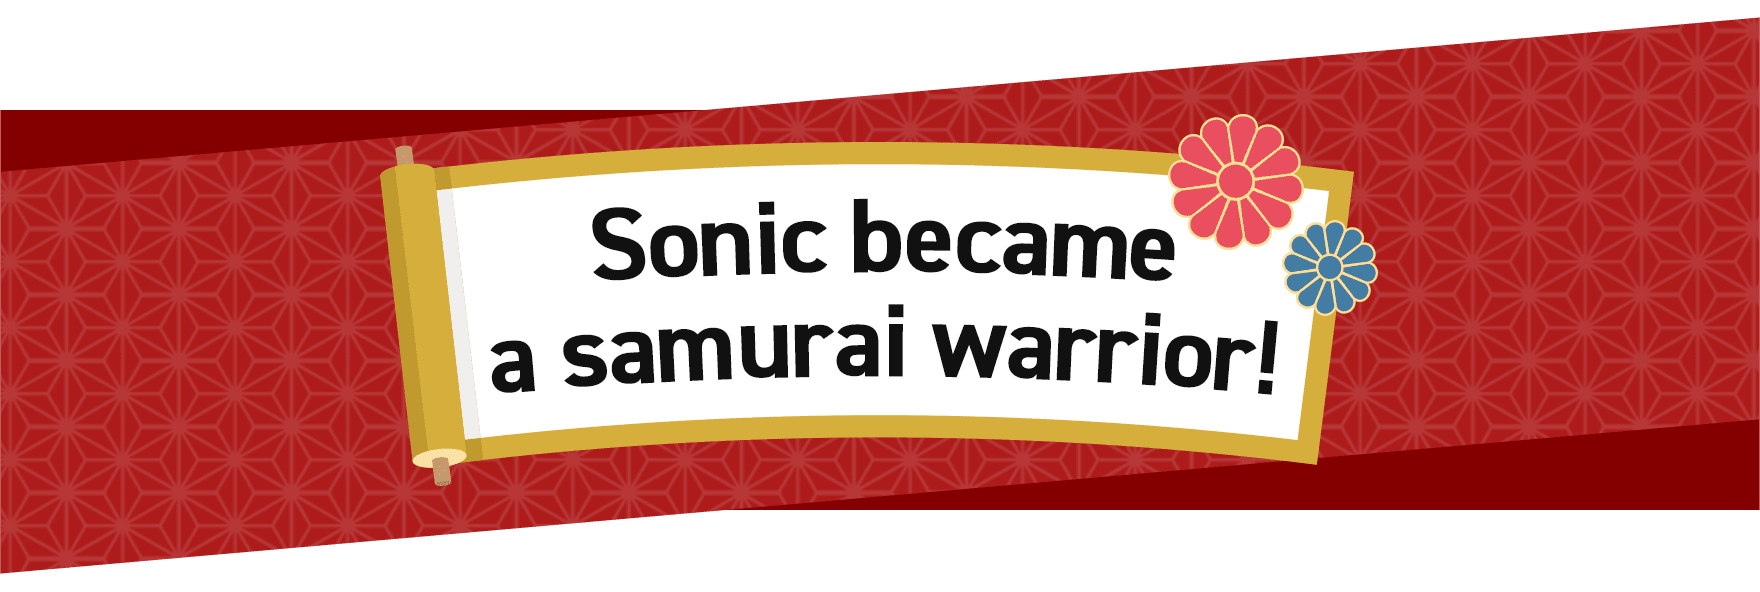 Sonic Became a samurai warrior!